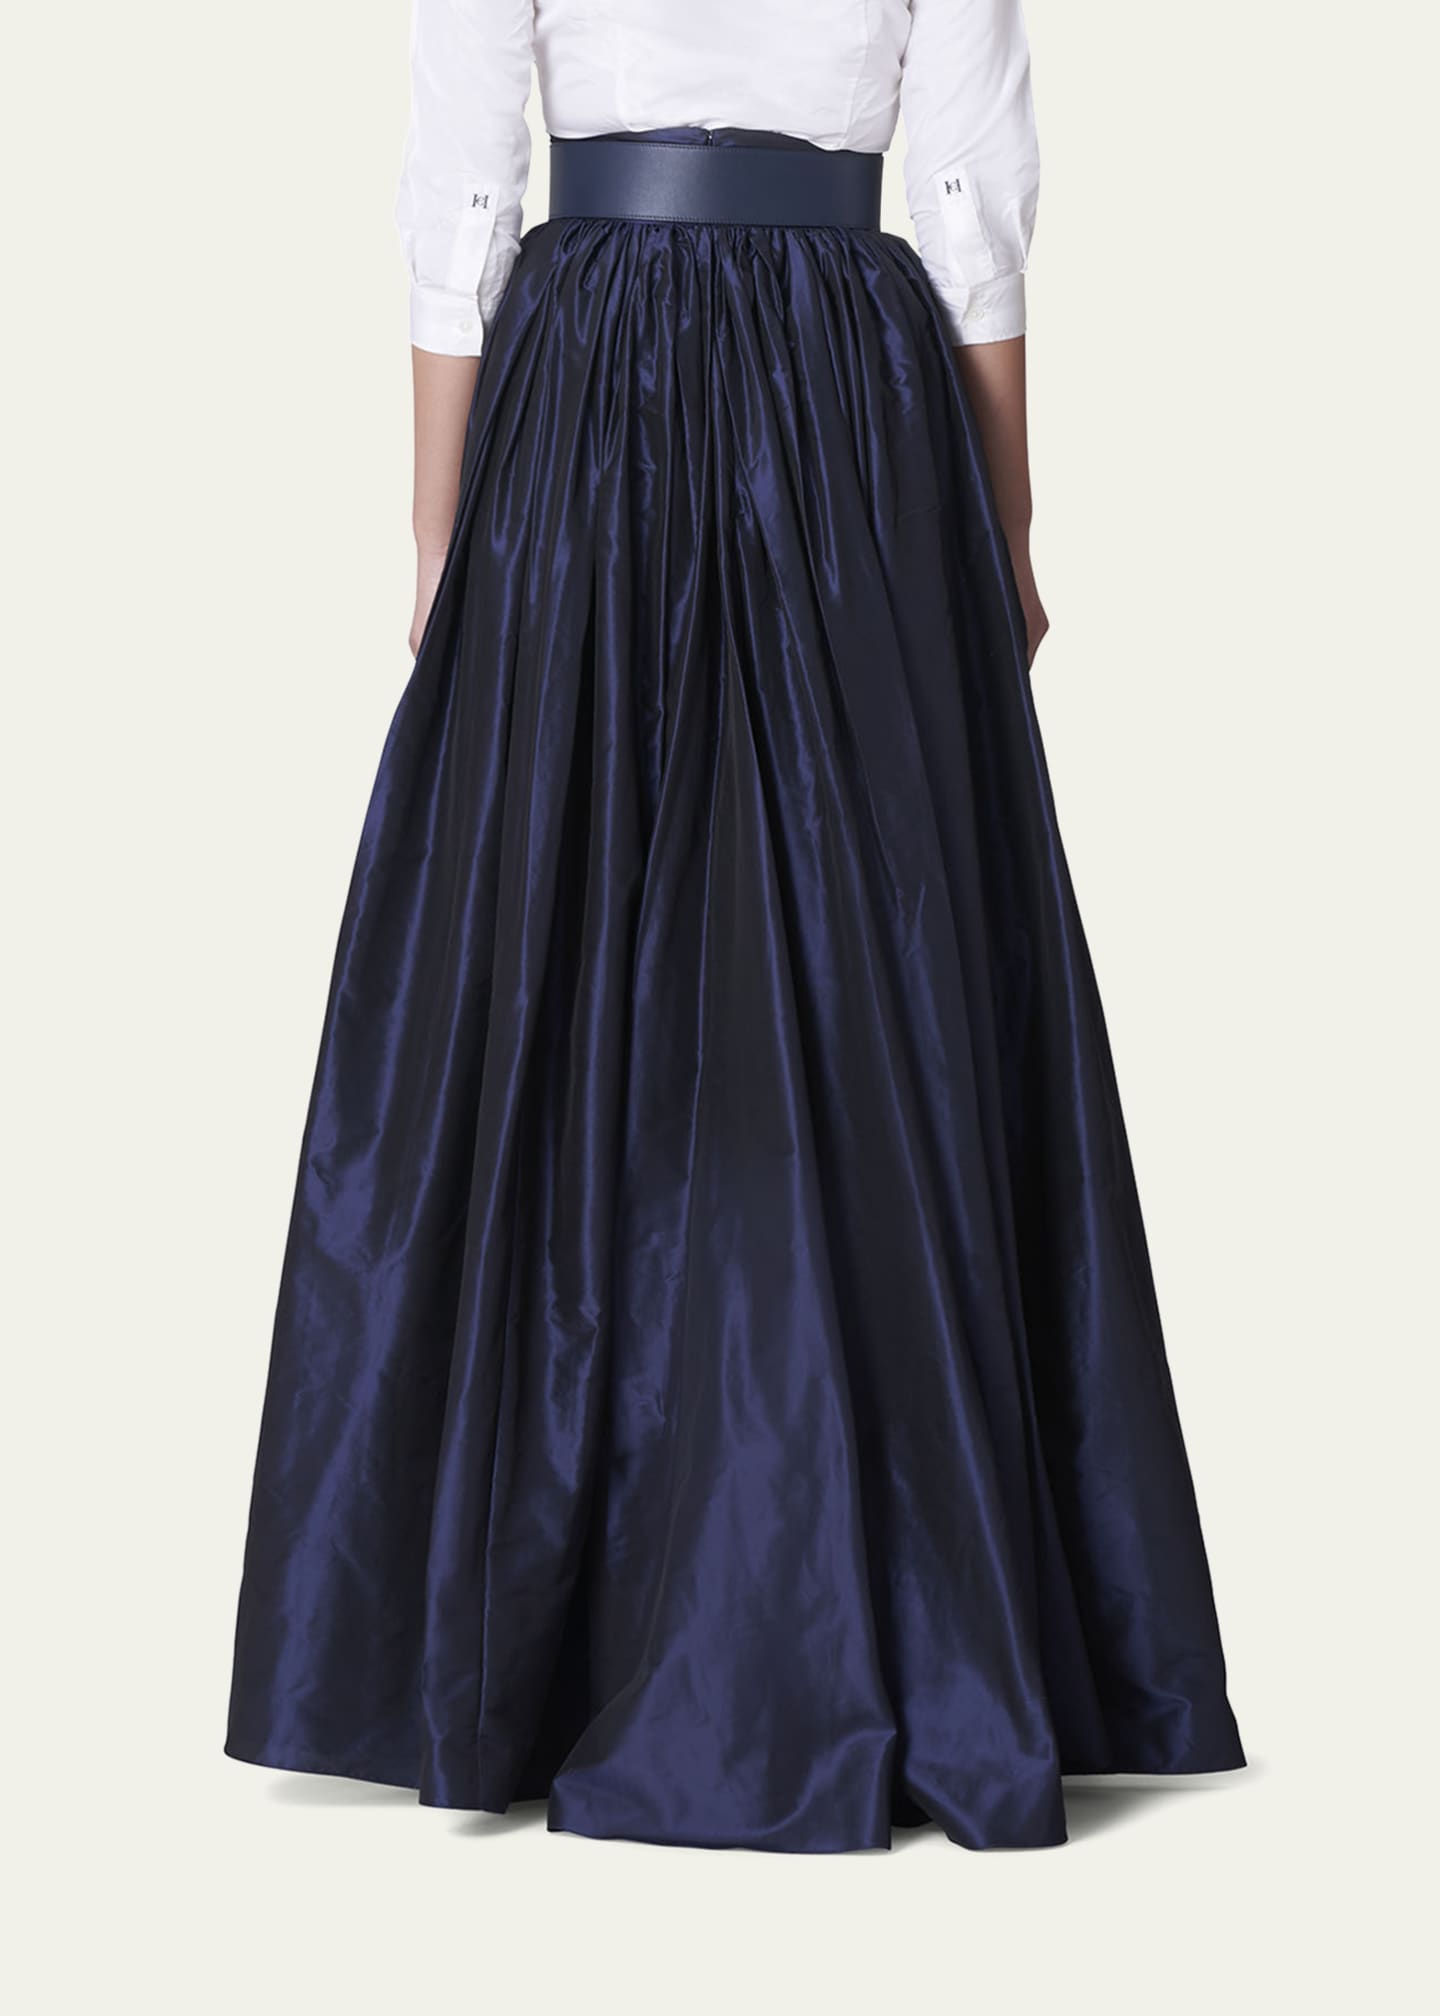 Carolina Herrera Pleated Silk Ball Skirt - Bergdorf Goodman